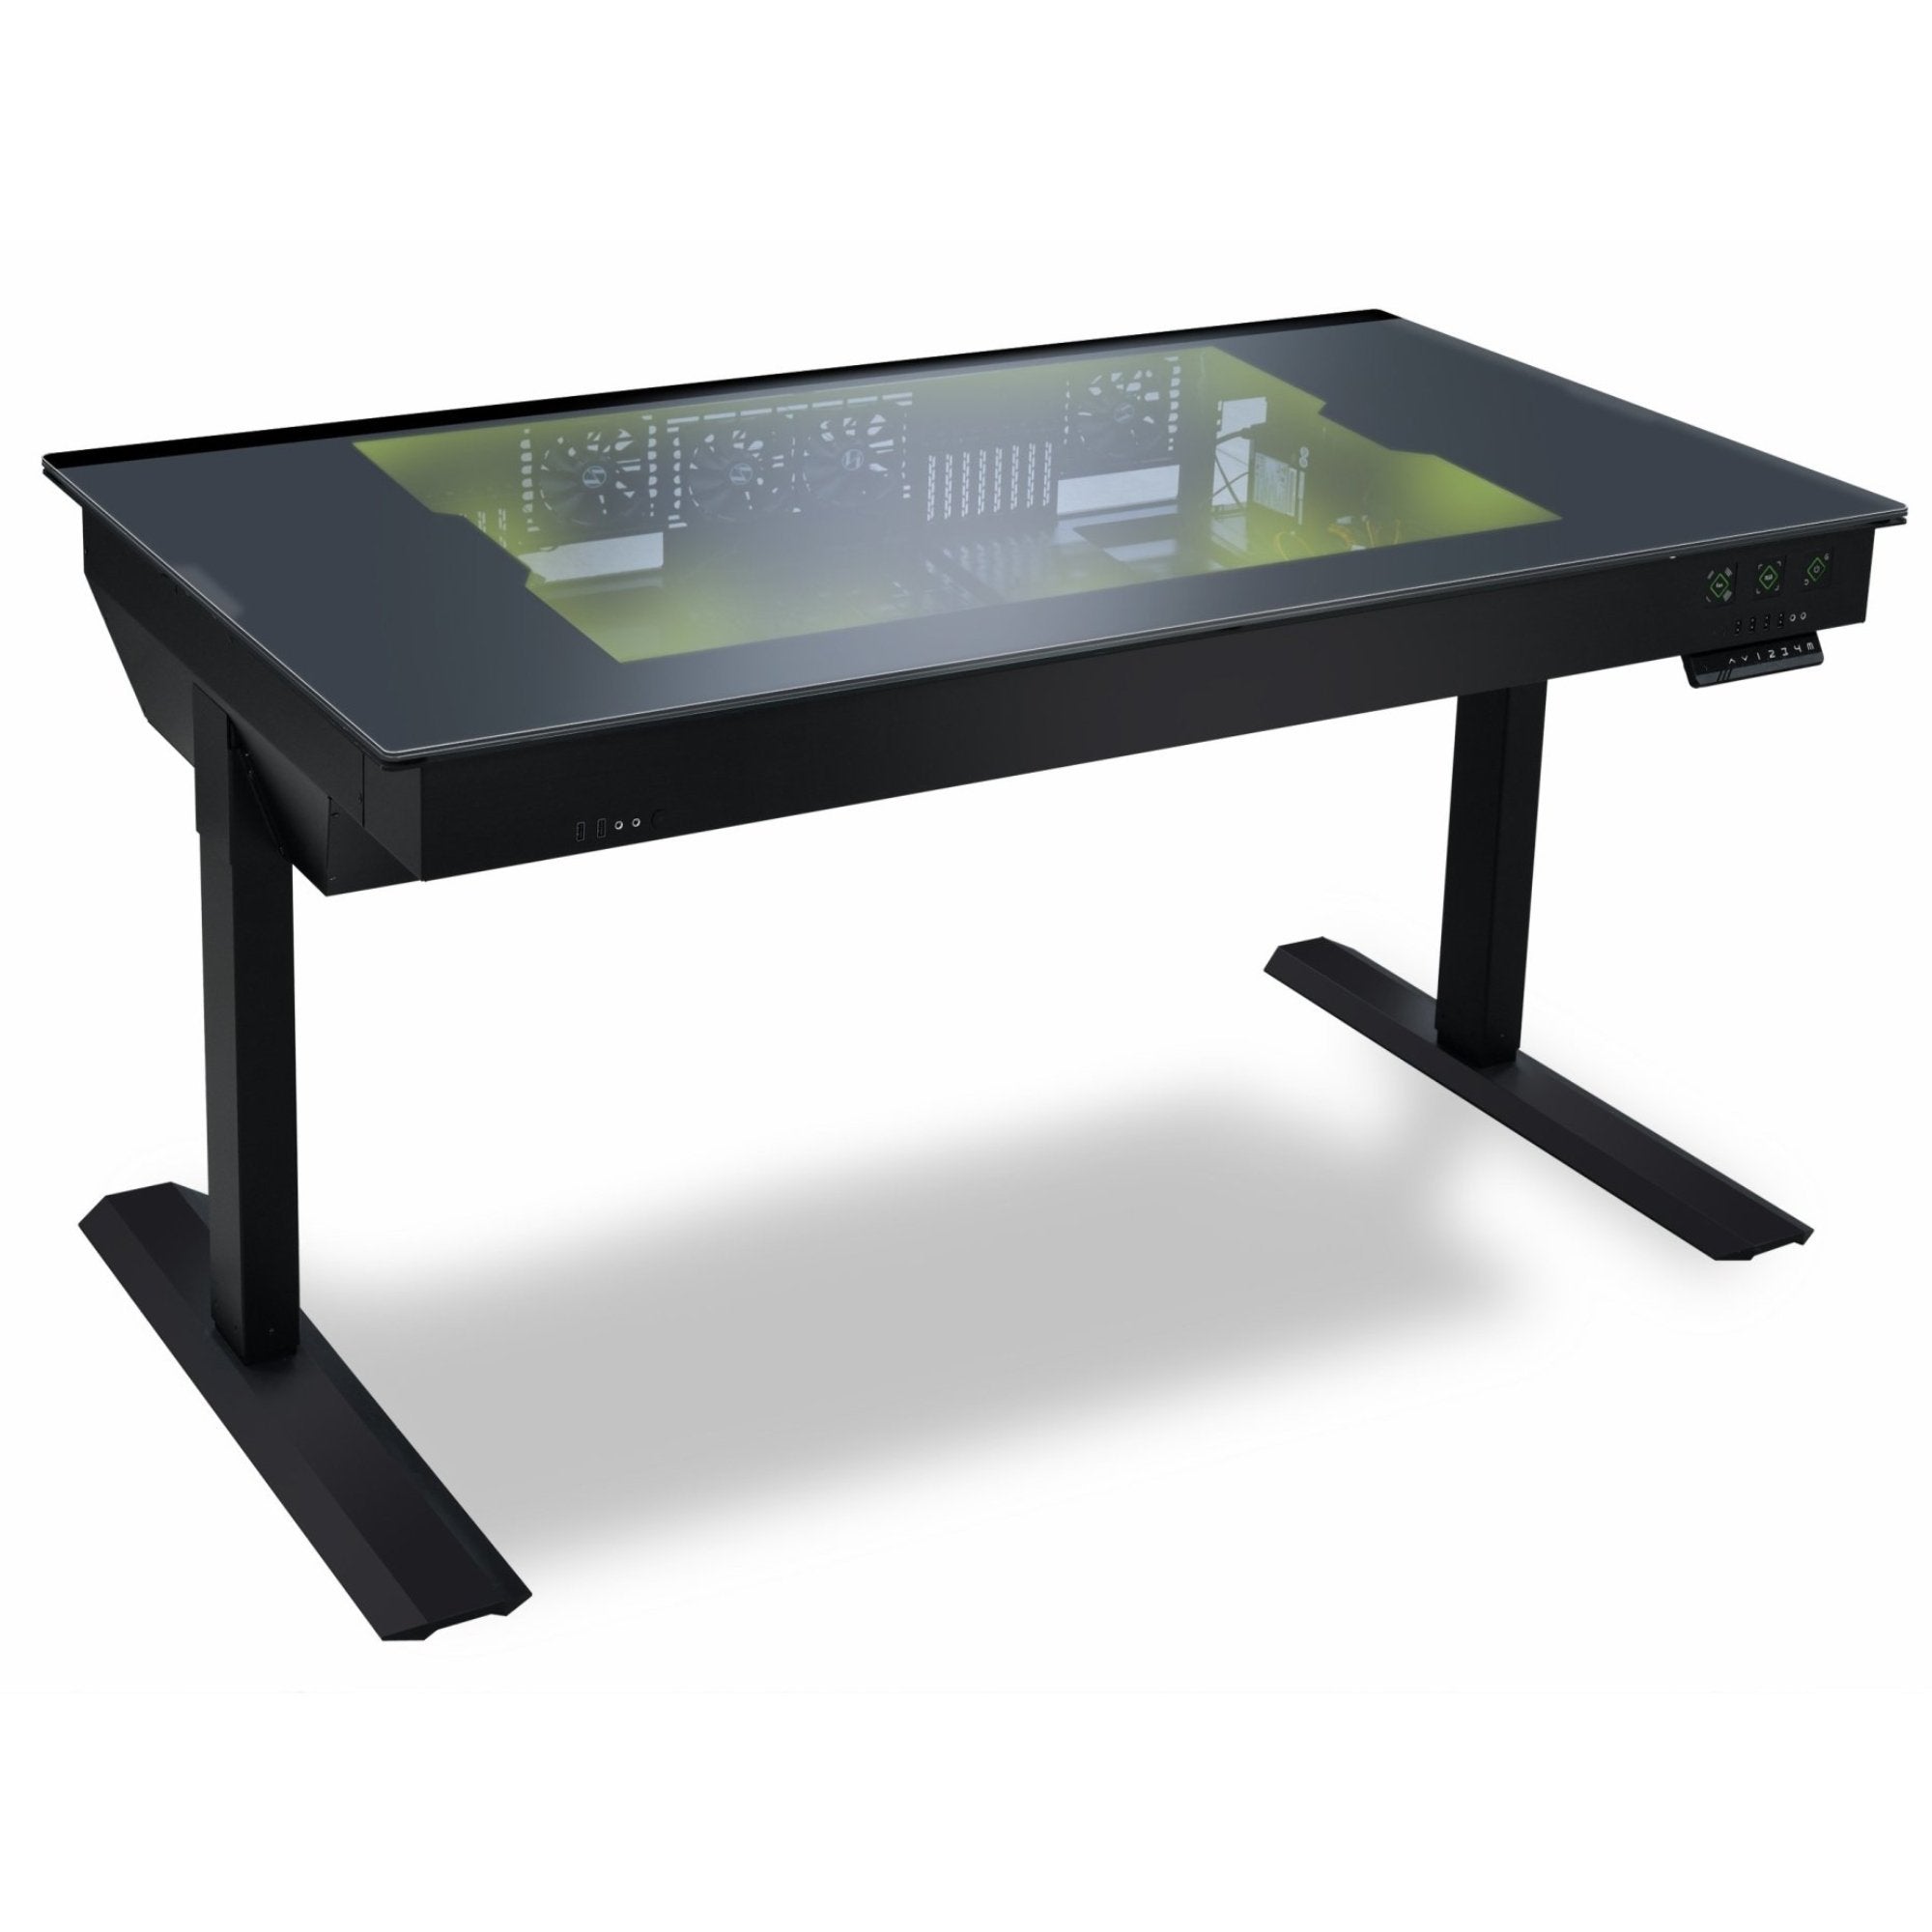 Lian Li DK-05F Dual eATX Tempered Glass RGB Desk - Black - Store 974 | ستور ٩٧٤